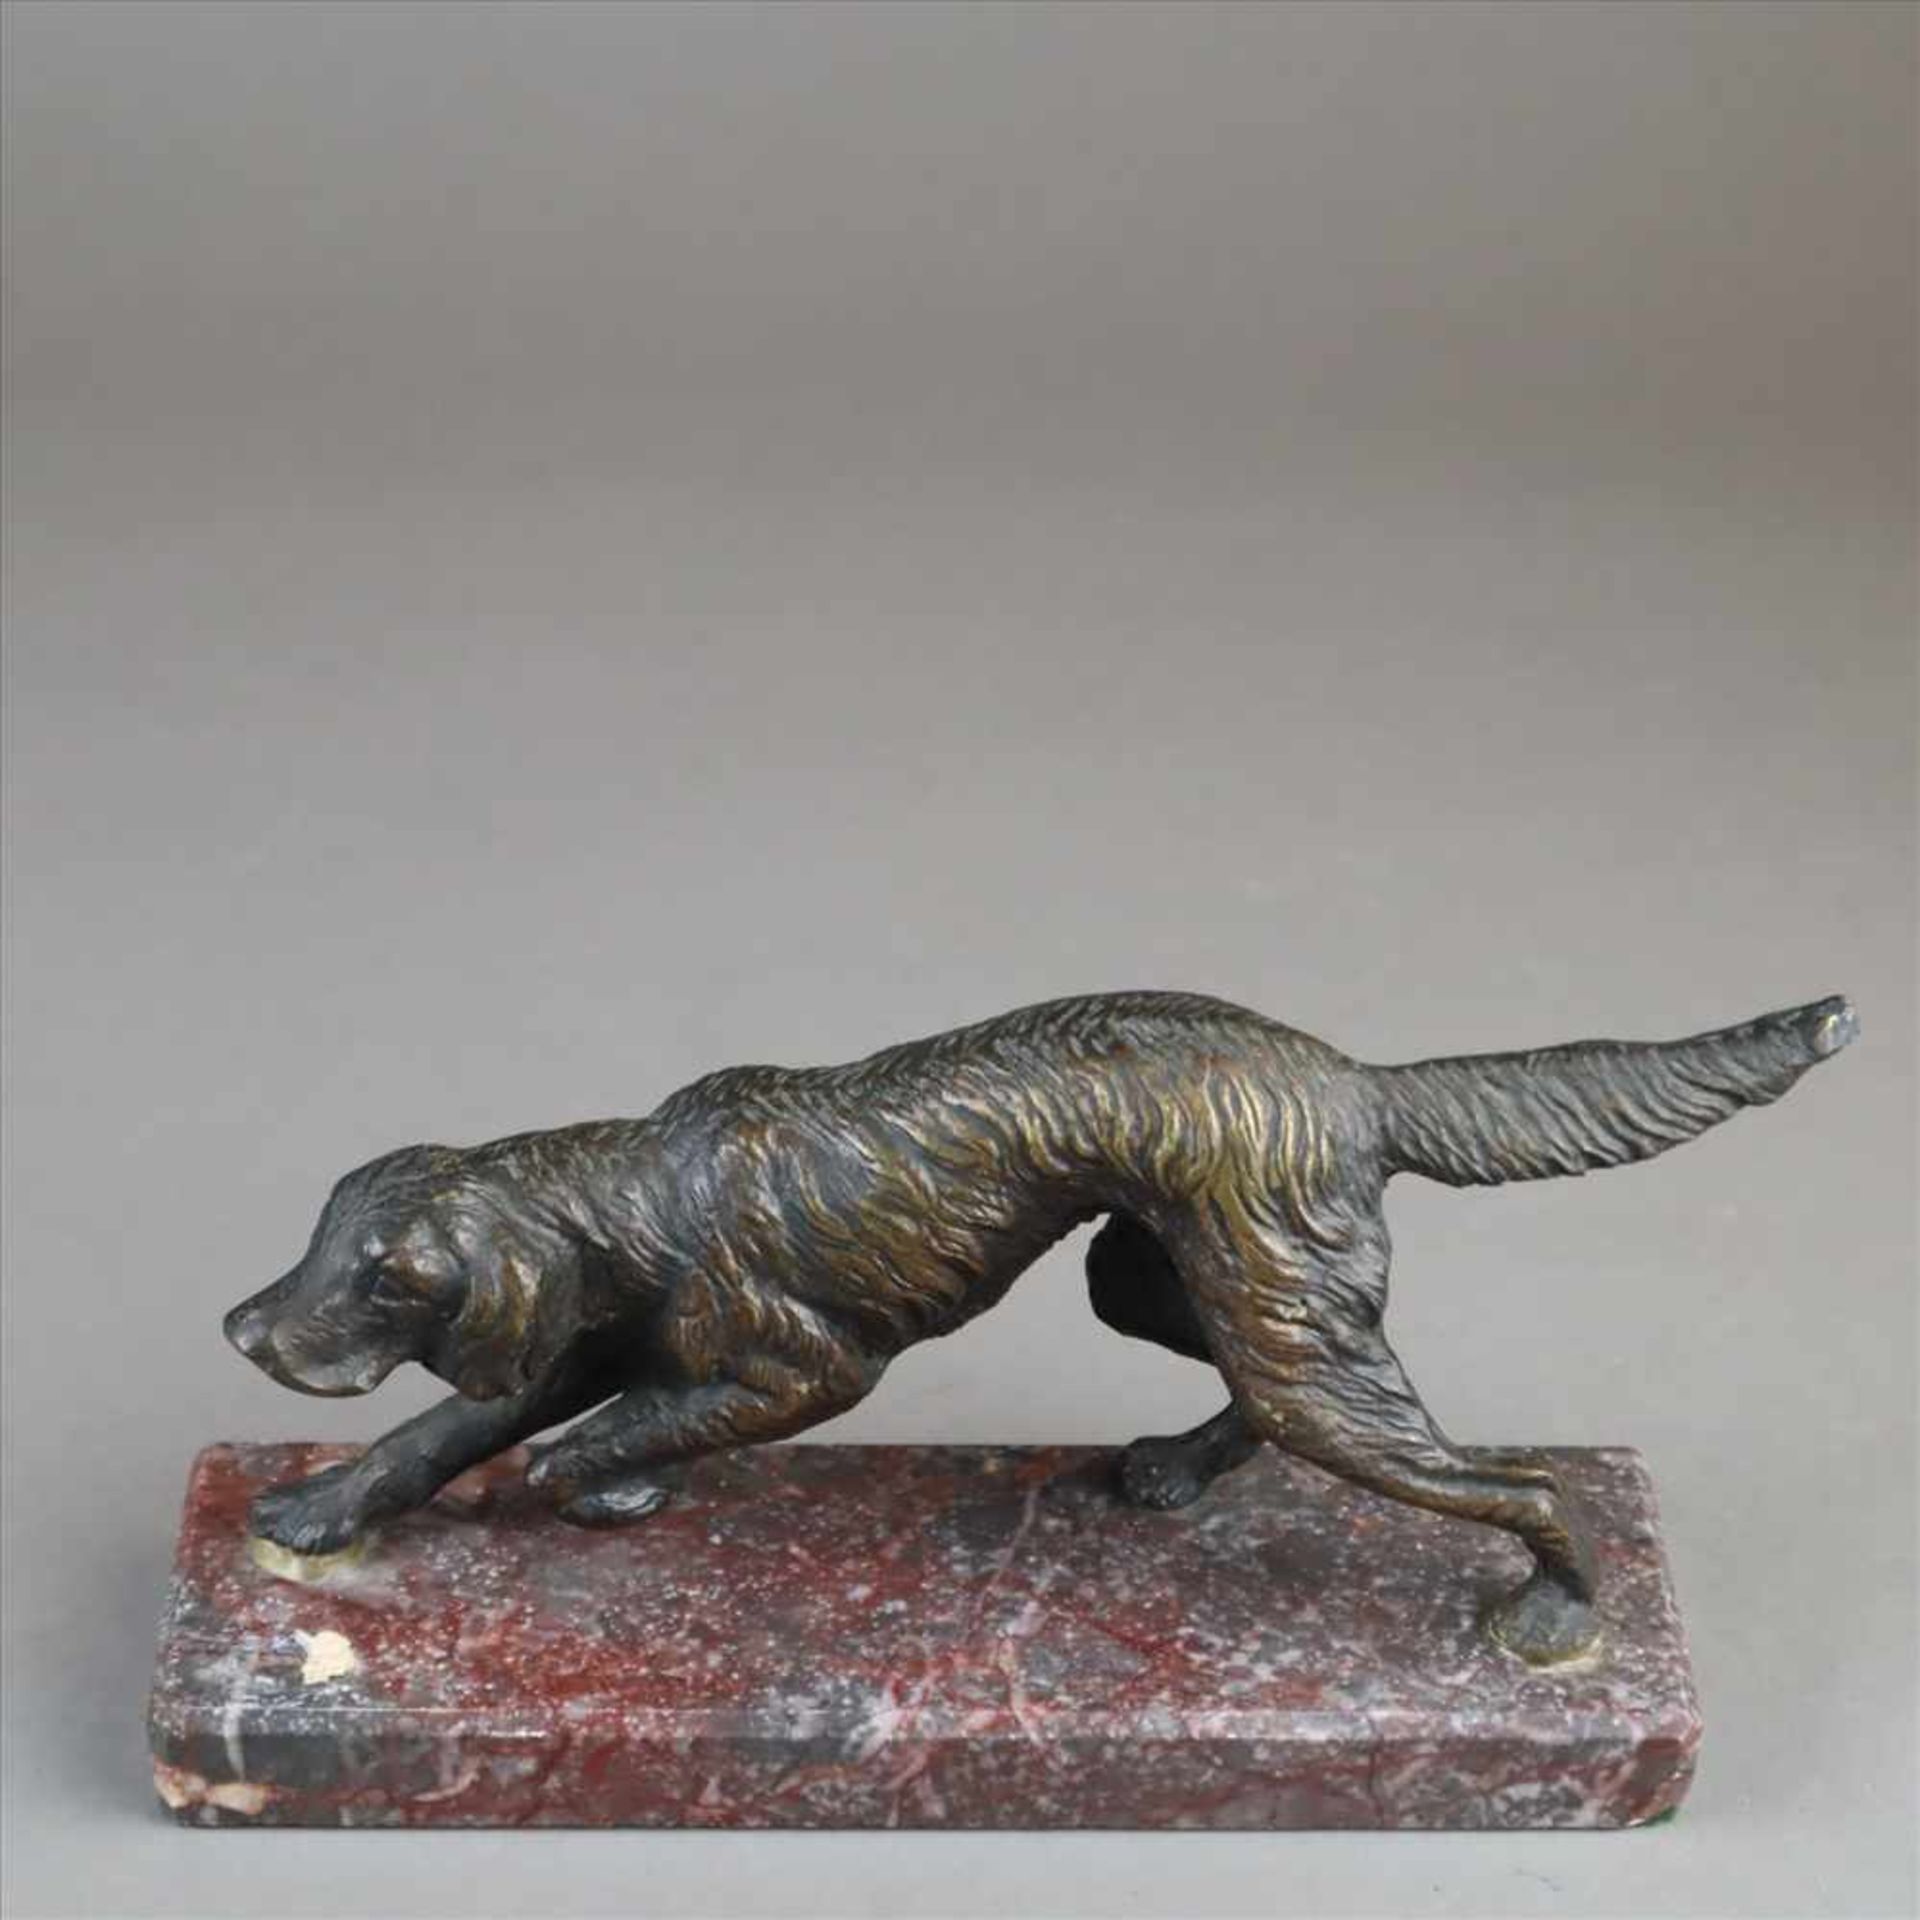 Jagdhund - Bronze dunkel patiniert, vollplastische naturalistische Darstellung eines Jagdhundes in